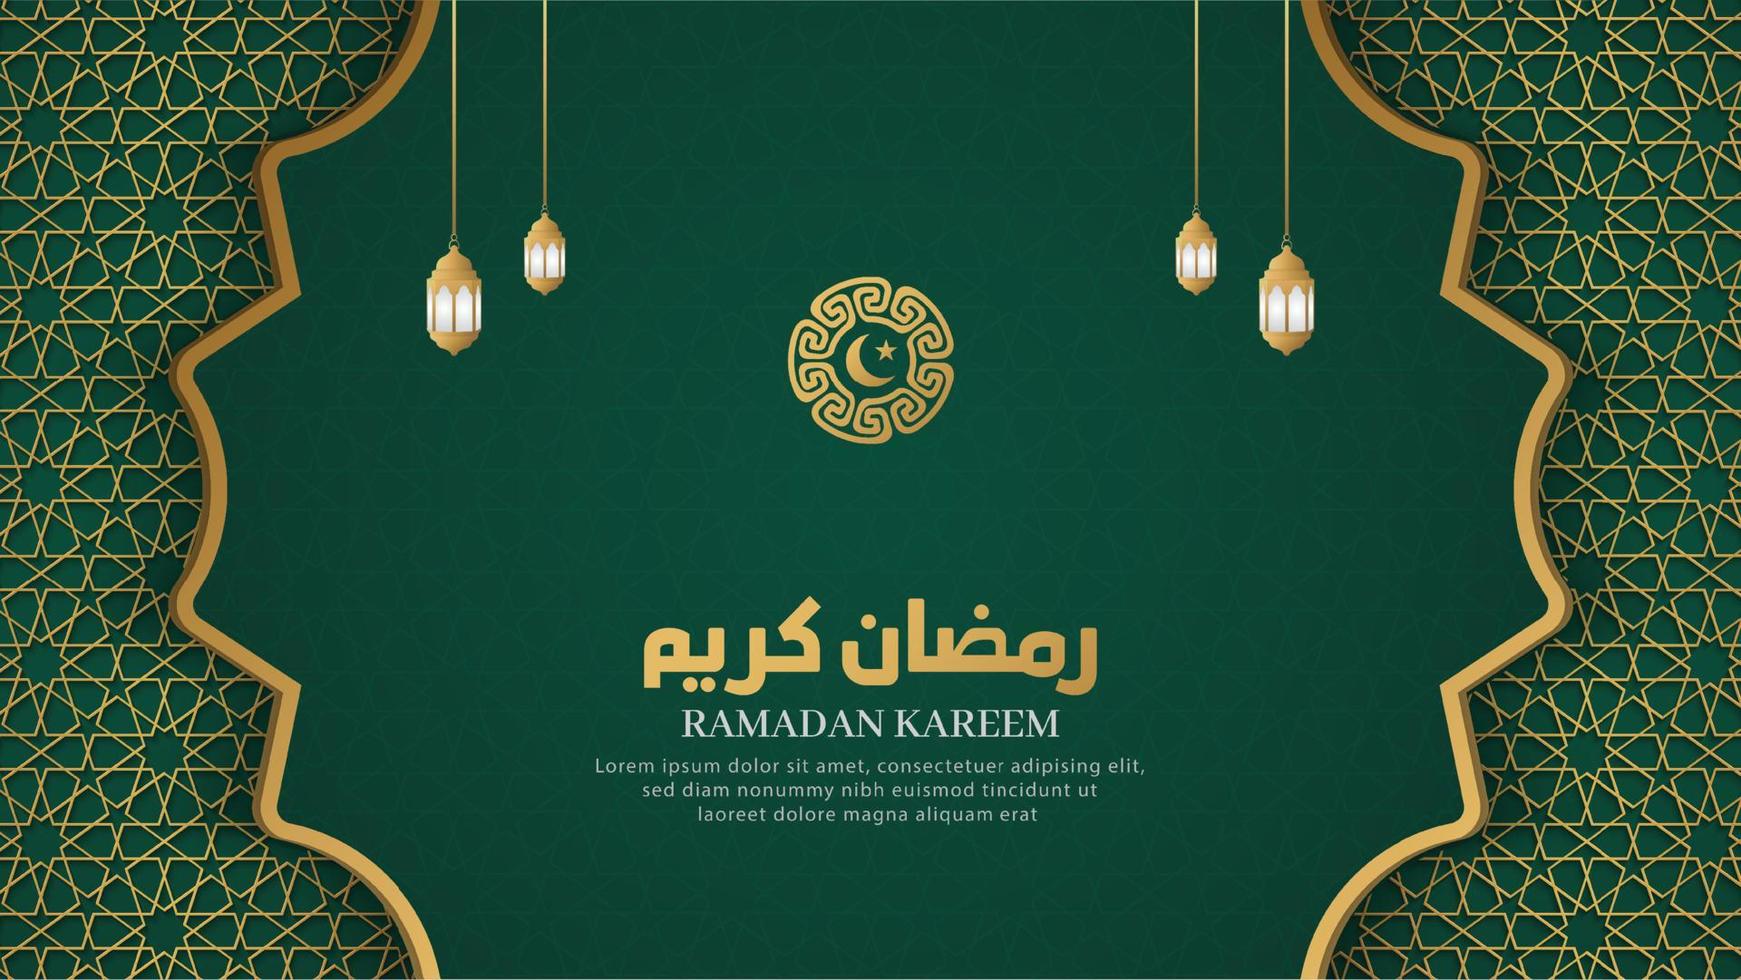 ramadan kareem islamischer arabischer grüner luxushintergrund mit geometrischem muster und schönen dekorativen laternen vektor